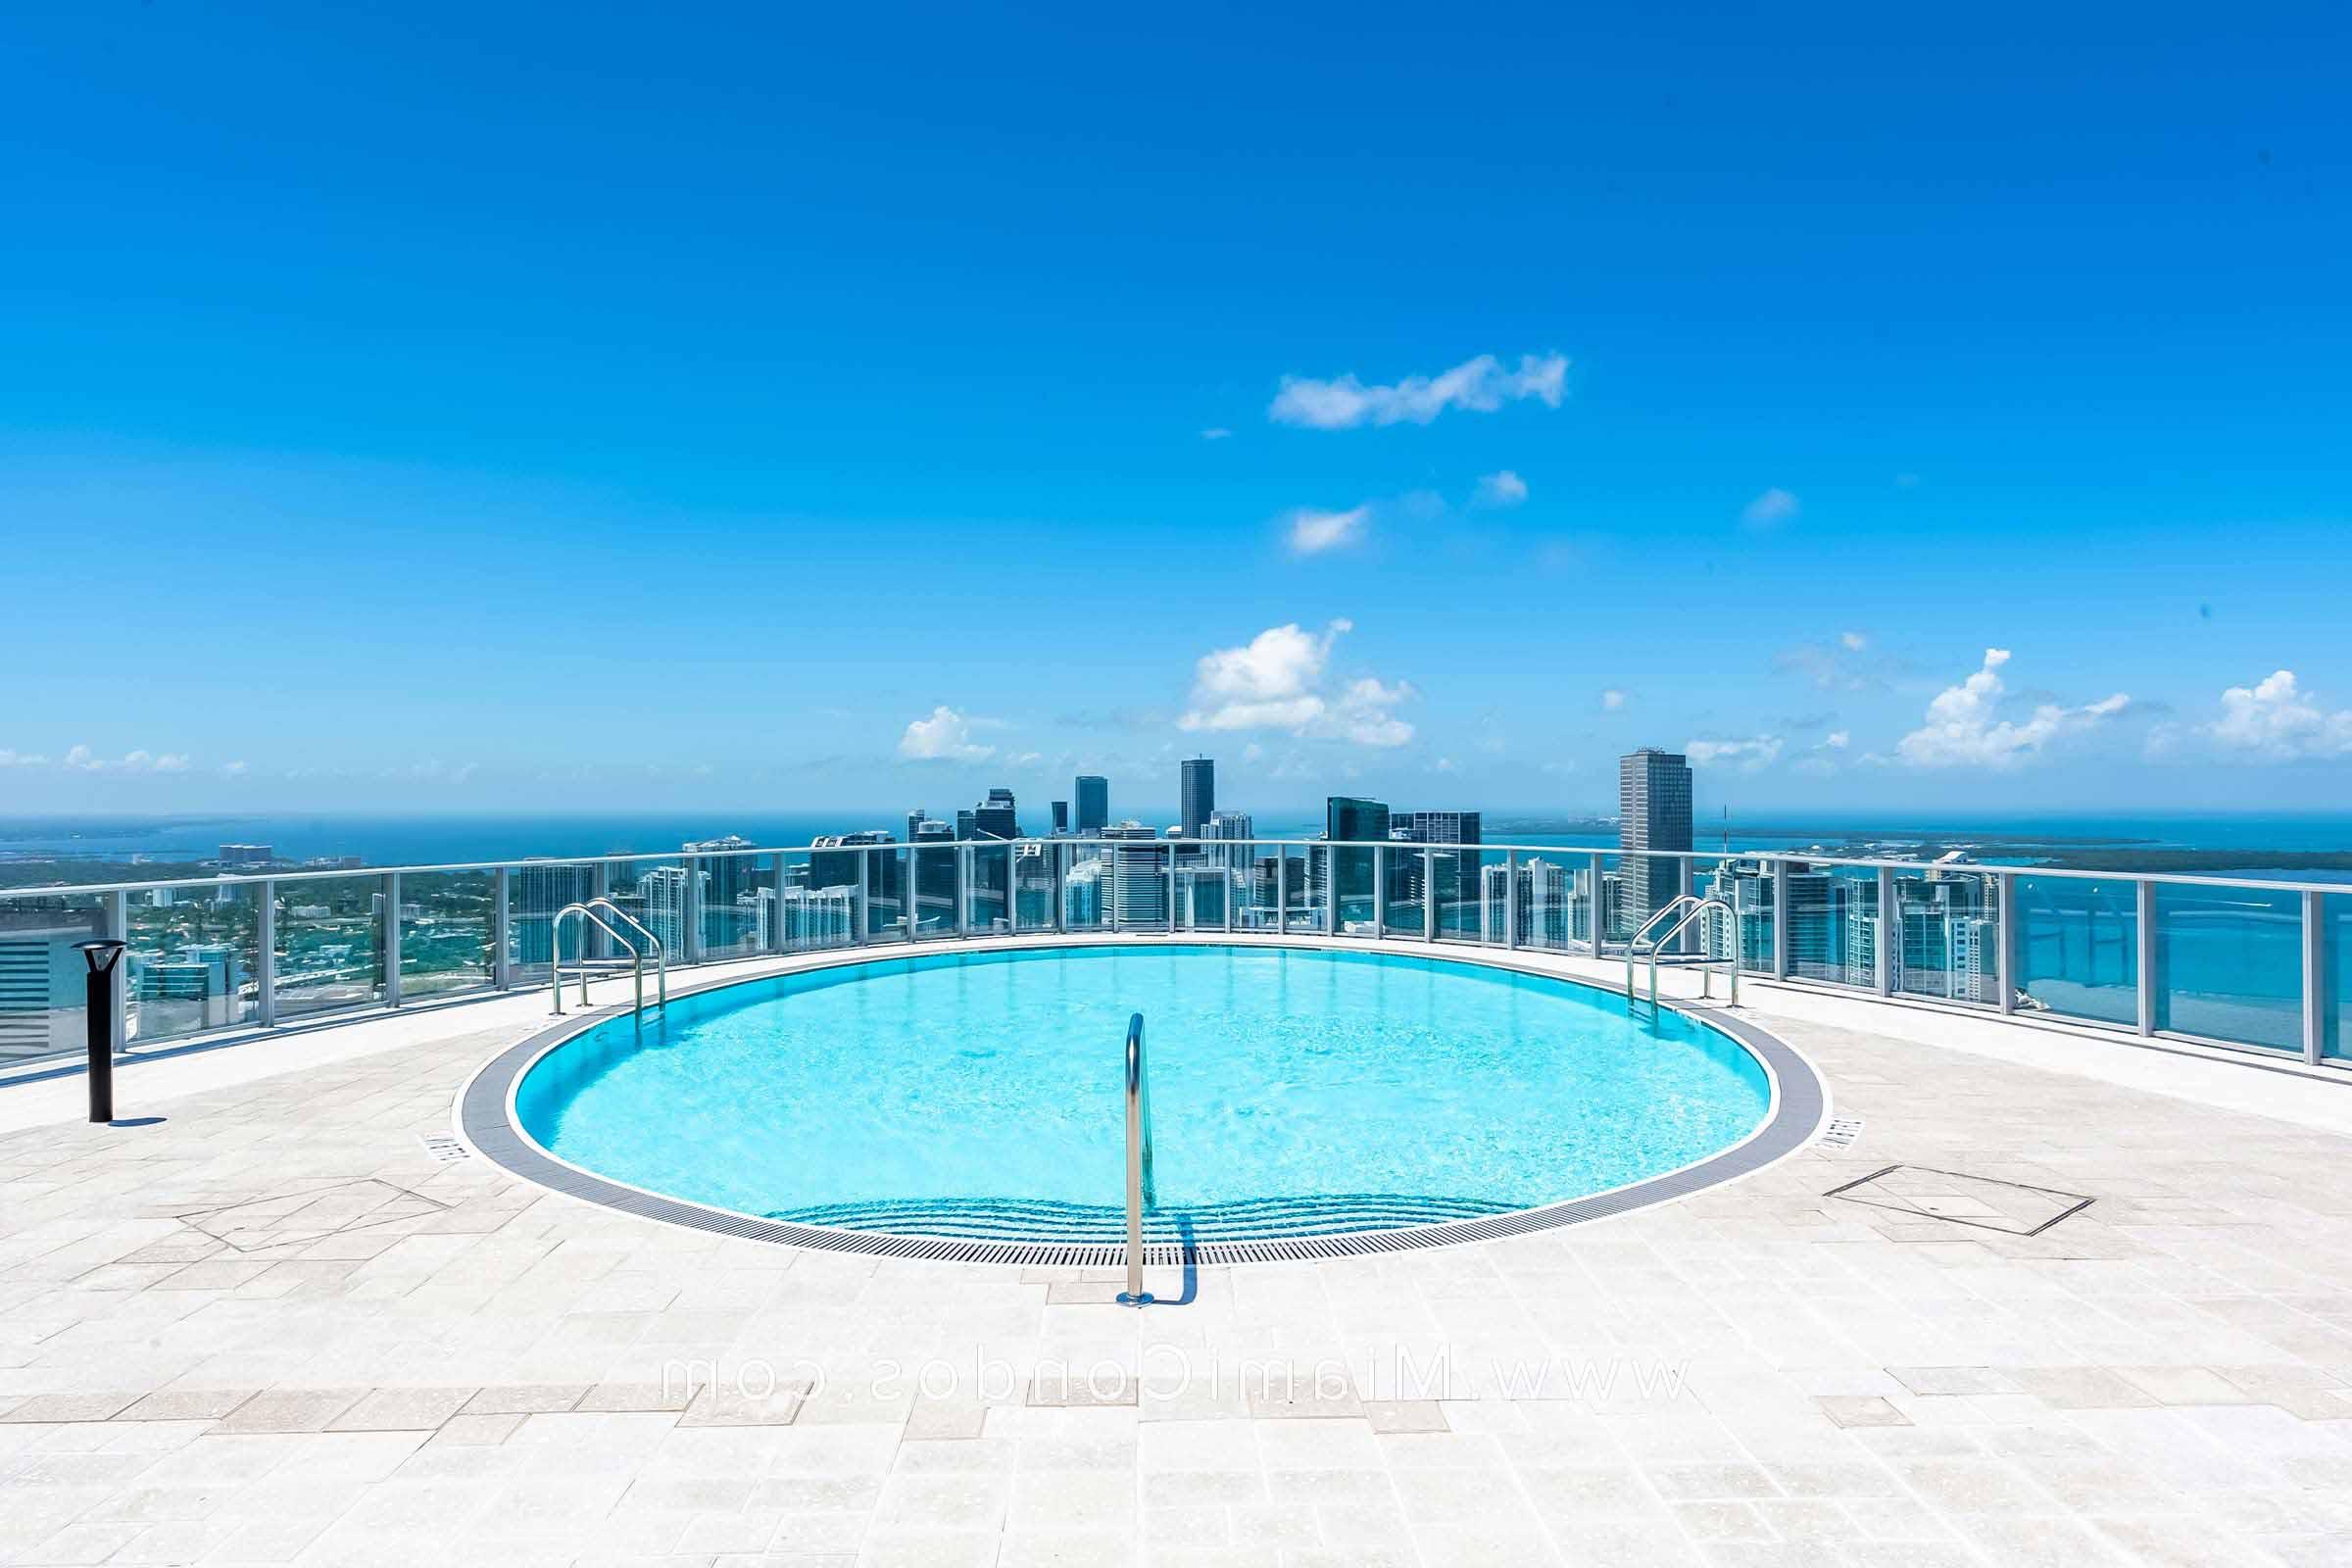 派拉蒙迈阿密世界中心屋顶游泳池